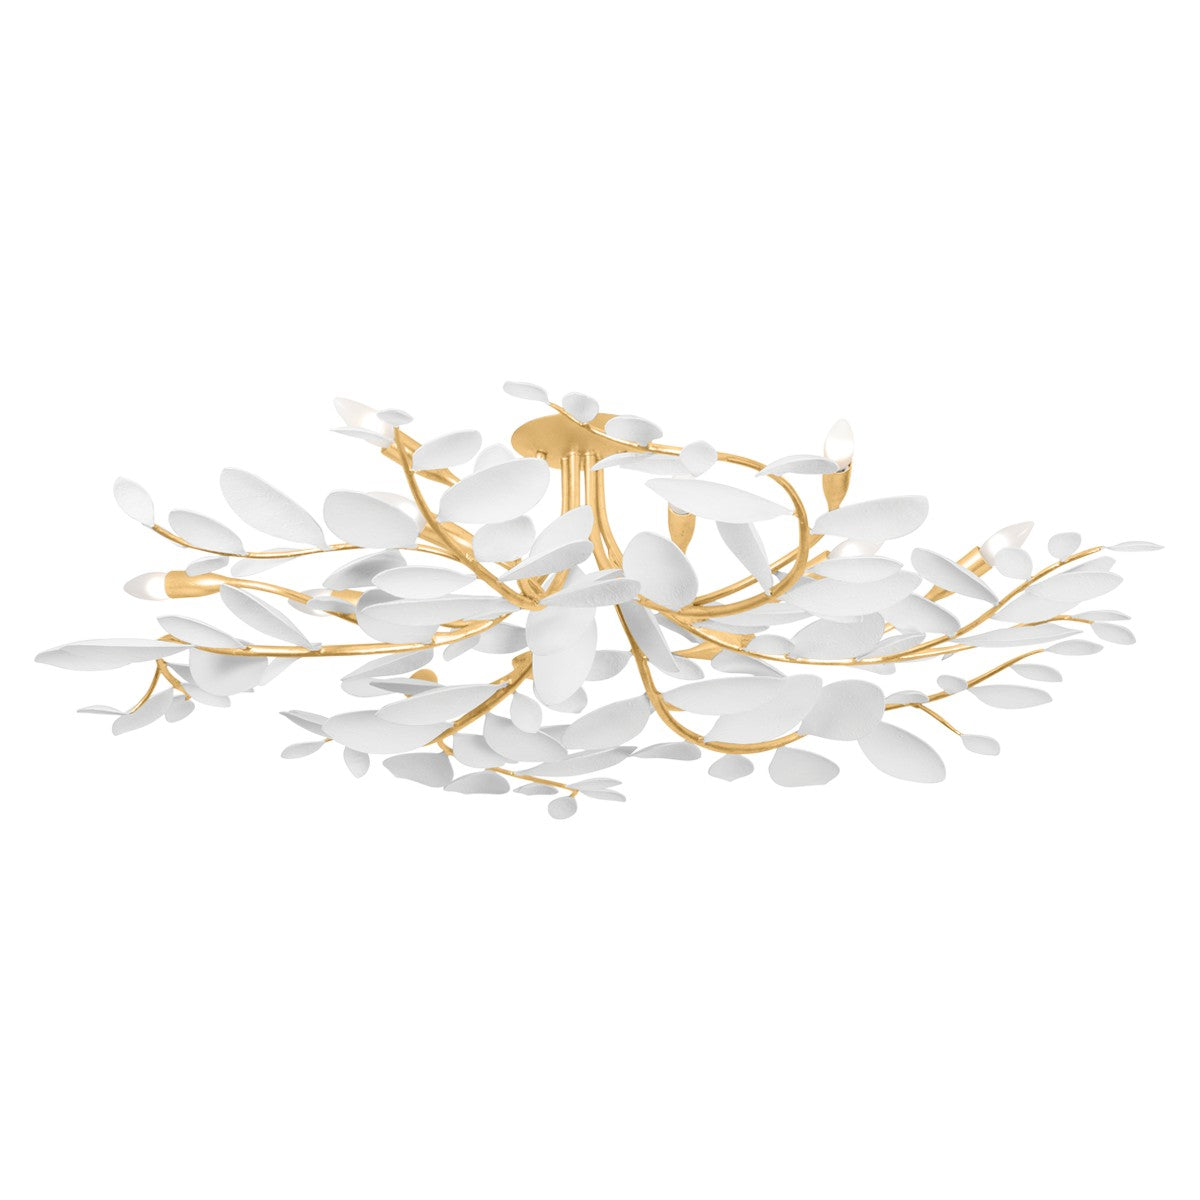 Hudson Valley - 12 Light Semi Flush Mount - Marabec - Vintage Gold Leaf/ White Plaster- Union Lighting Luminaires Decor